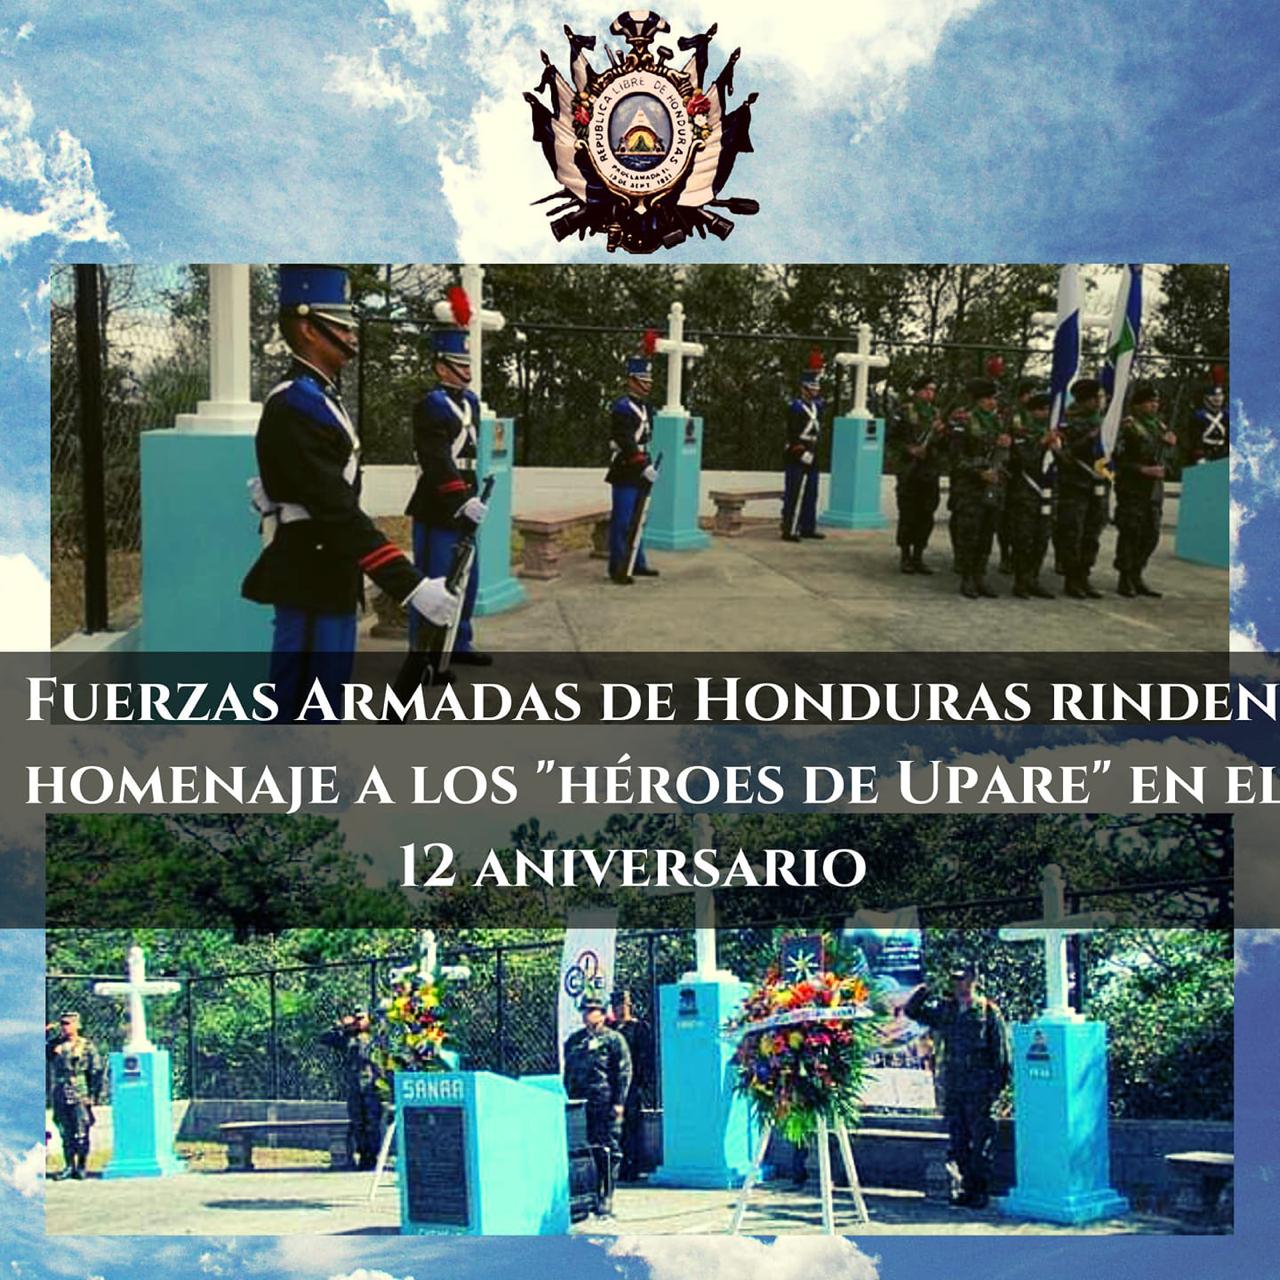 Fuerzas Armadas de Honduras conmemoran 12 años de los Héroes de Upare